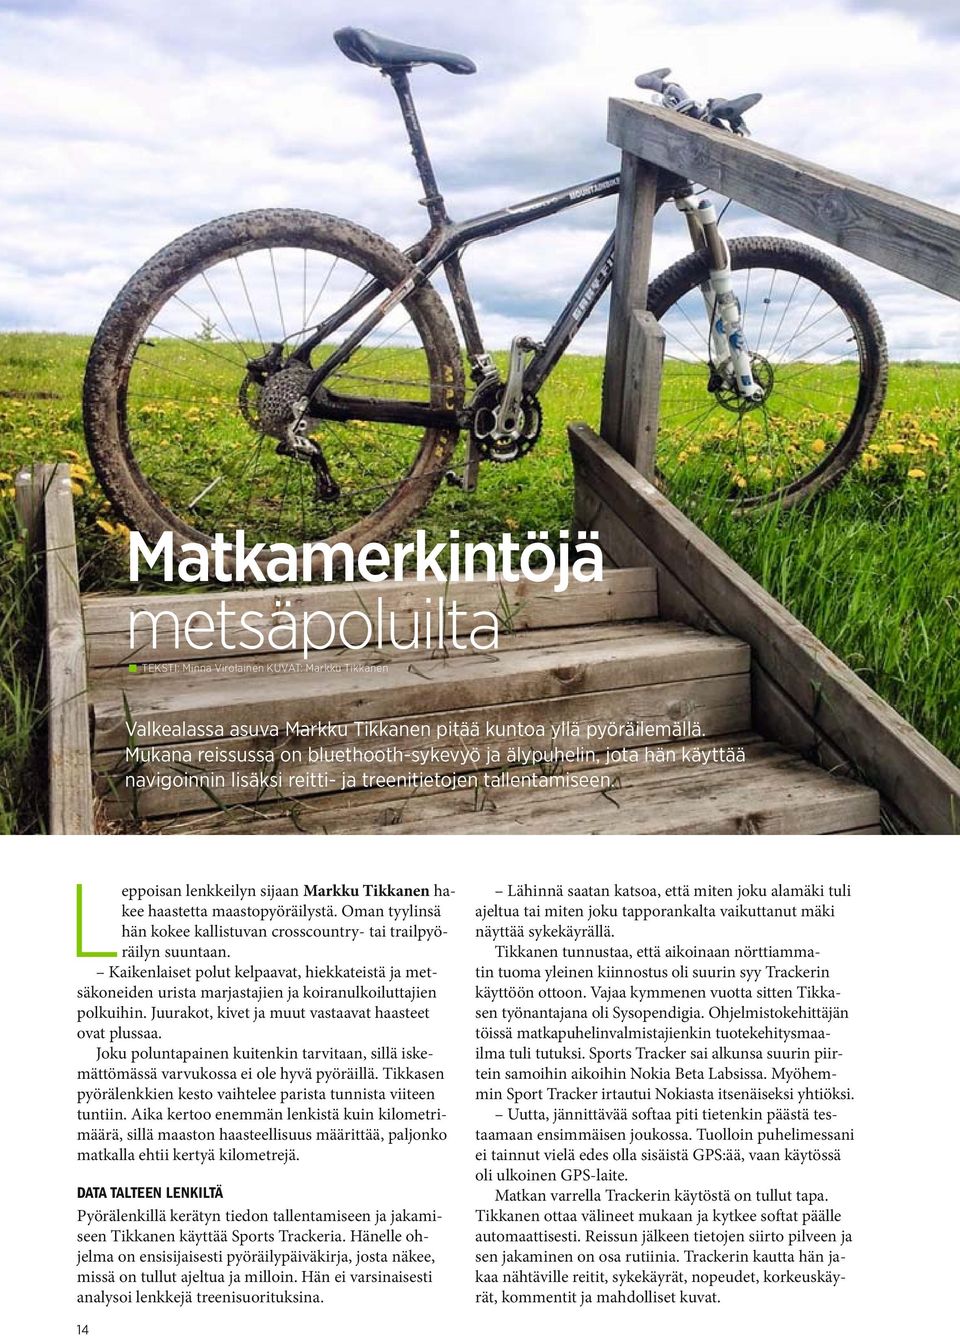 Leppoisan lenkkeilyn sijaan Markku Tikkanen hakee haastetta maastopyöräilystä. Oman tyylinsä hän kokee kallistuvan crosscountry- tai trailpyöräilyn suuntaan.